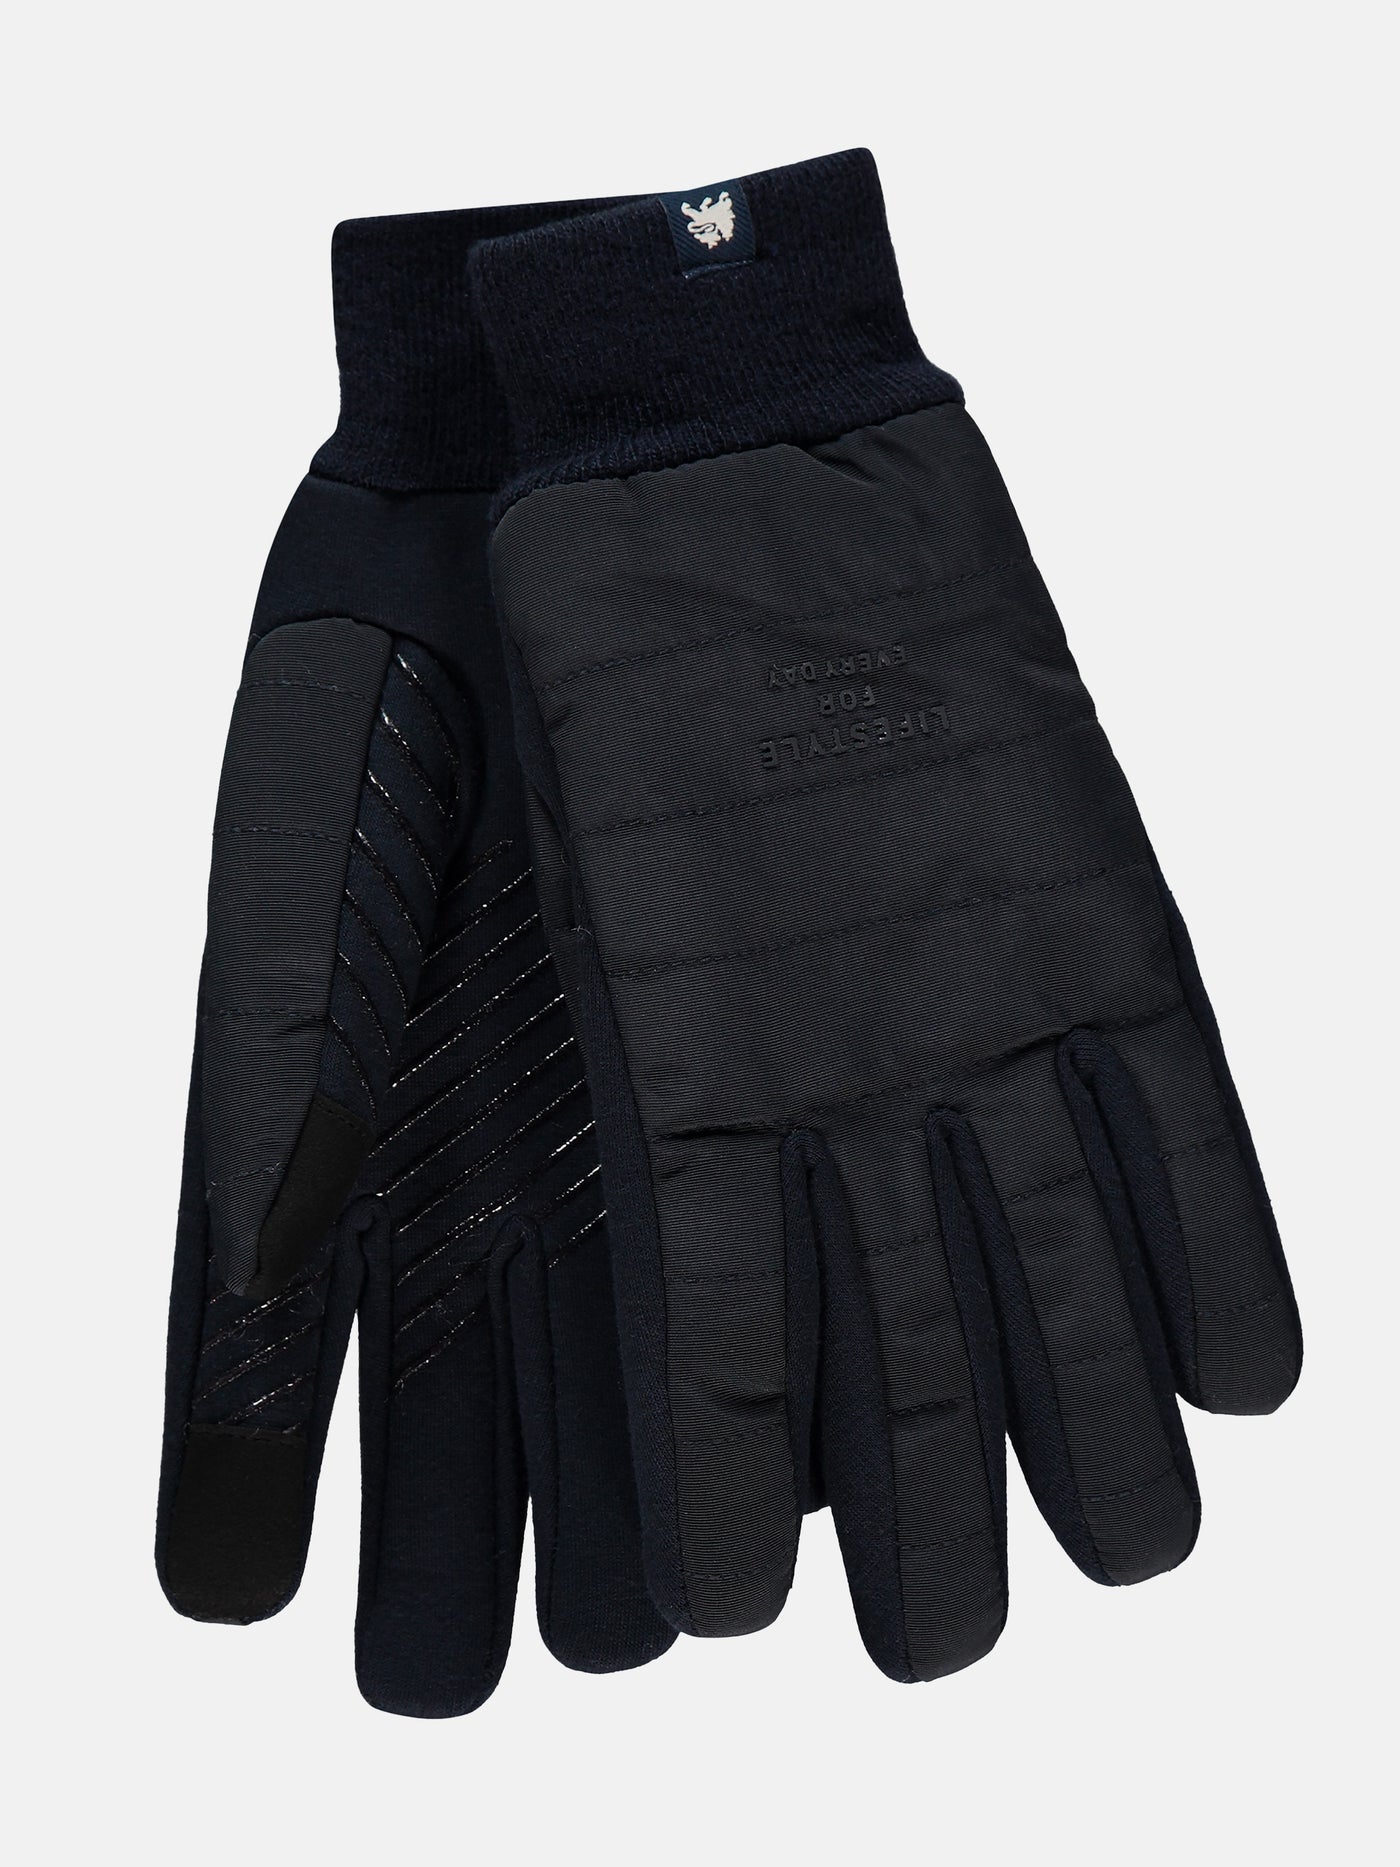 LERROS glove Lined – SHOP